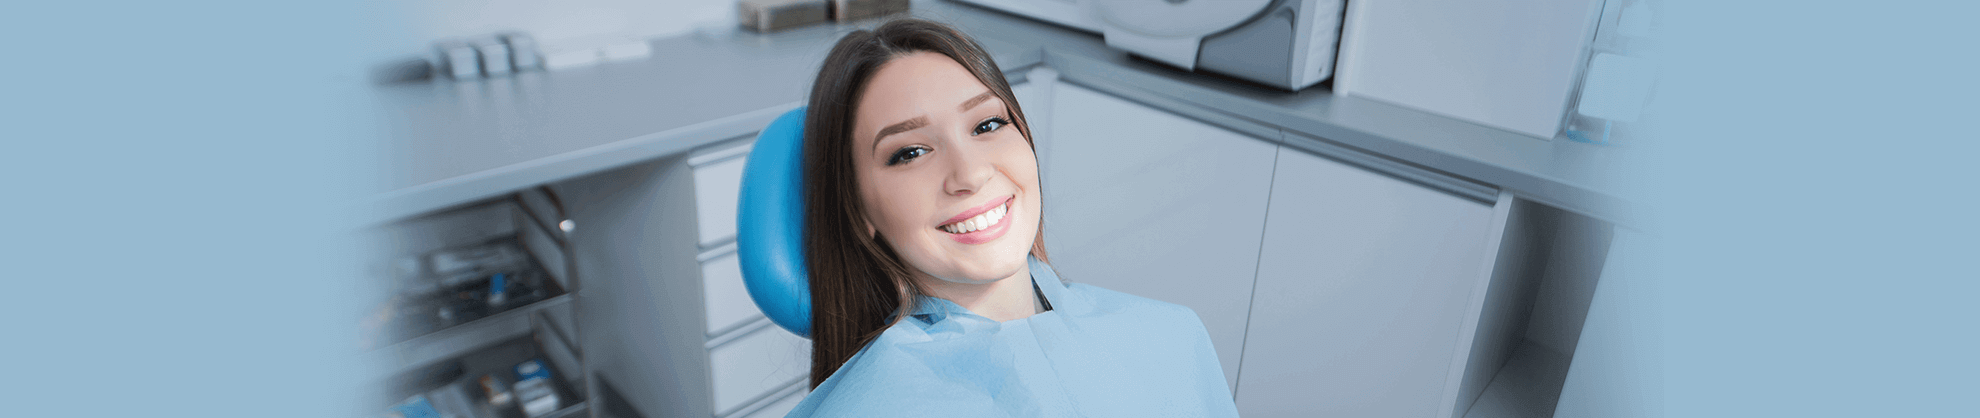 Regular Dental Checkups in Danbury, Connecticut